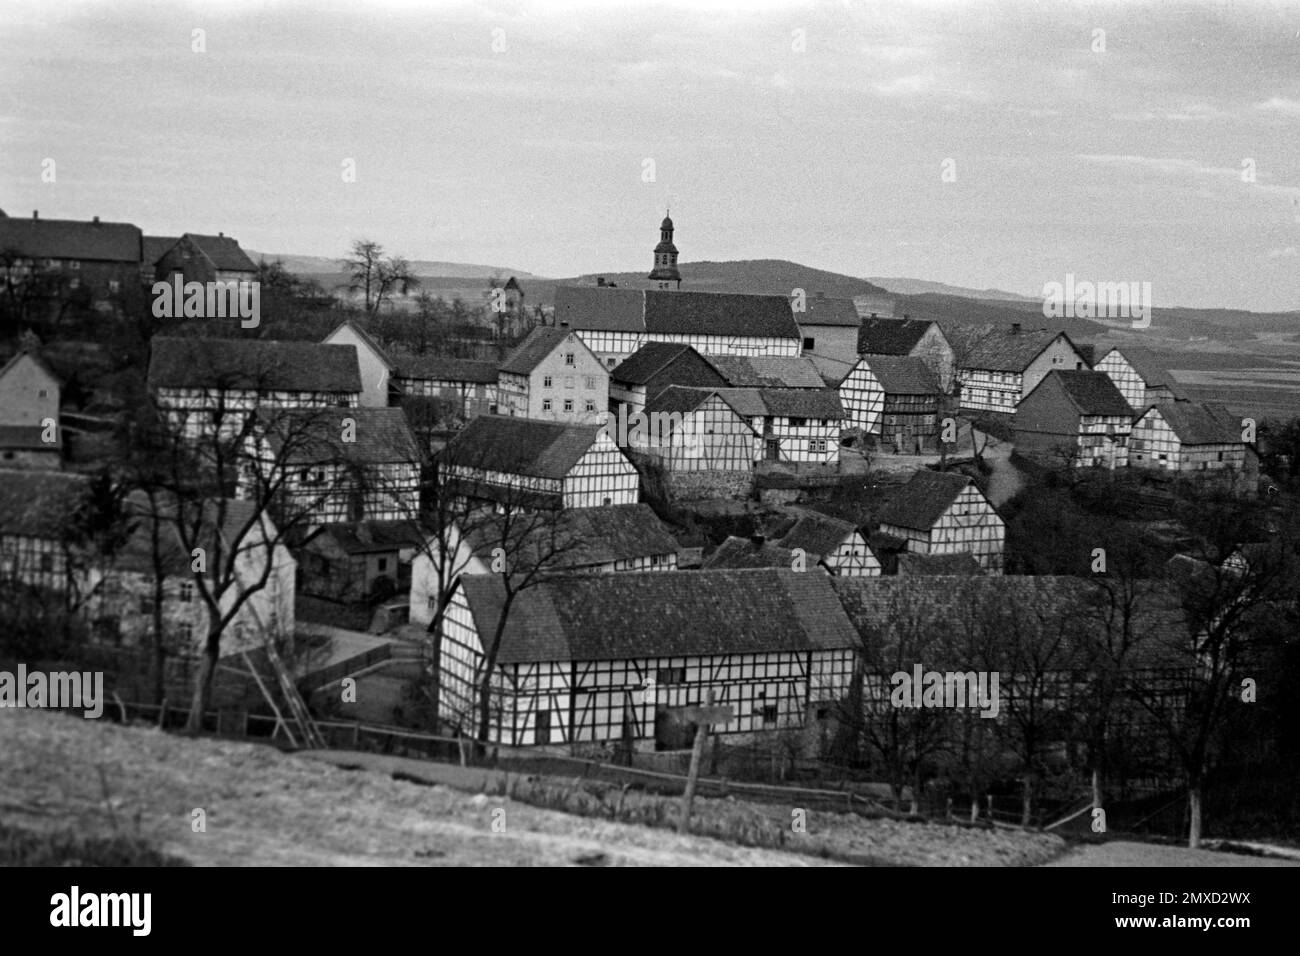 Blick auf Dorf mit Kirche, eventuell die Schlossskirche Altenburg, Schwalm-Eder-Kreis, Hessen, 1938. Vue sur le village avec église, peut-être l'église du château d'Altenburg, région de Schwalm-Eder à Hesse, 1938. Banque D'Images